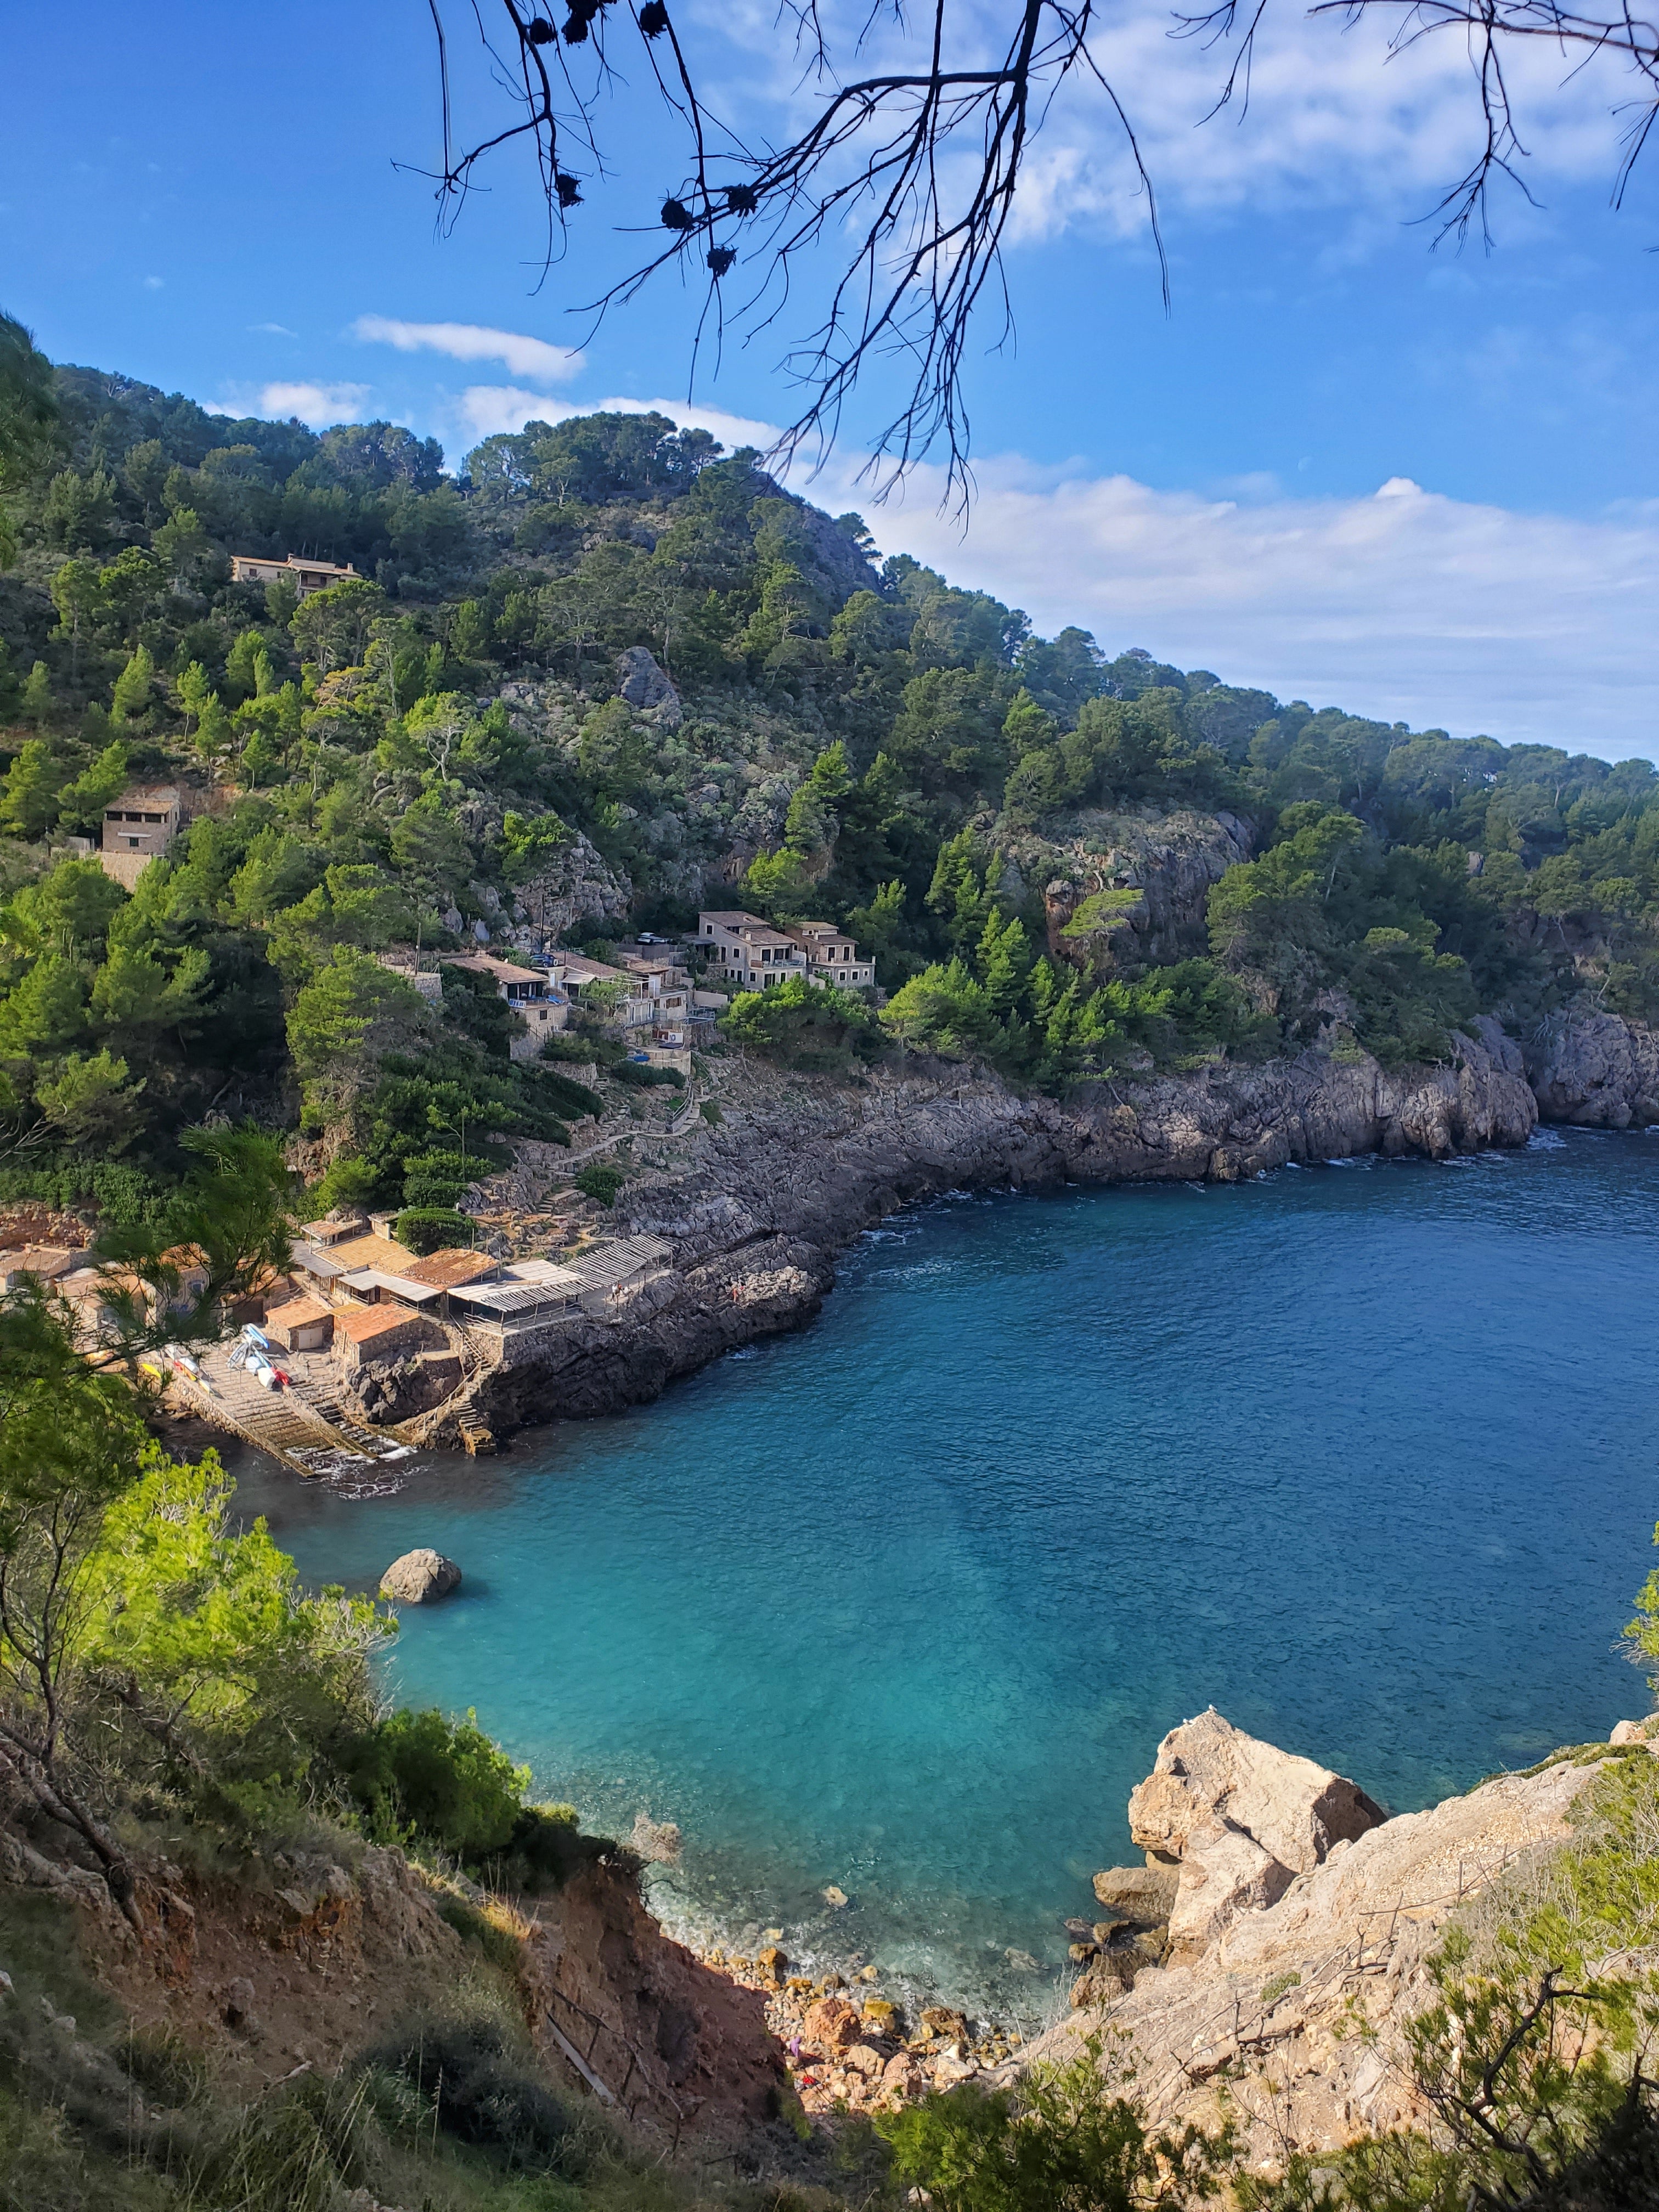 A photo of Cala Deia (beach) in Mallorca